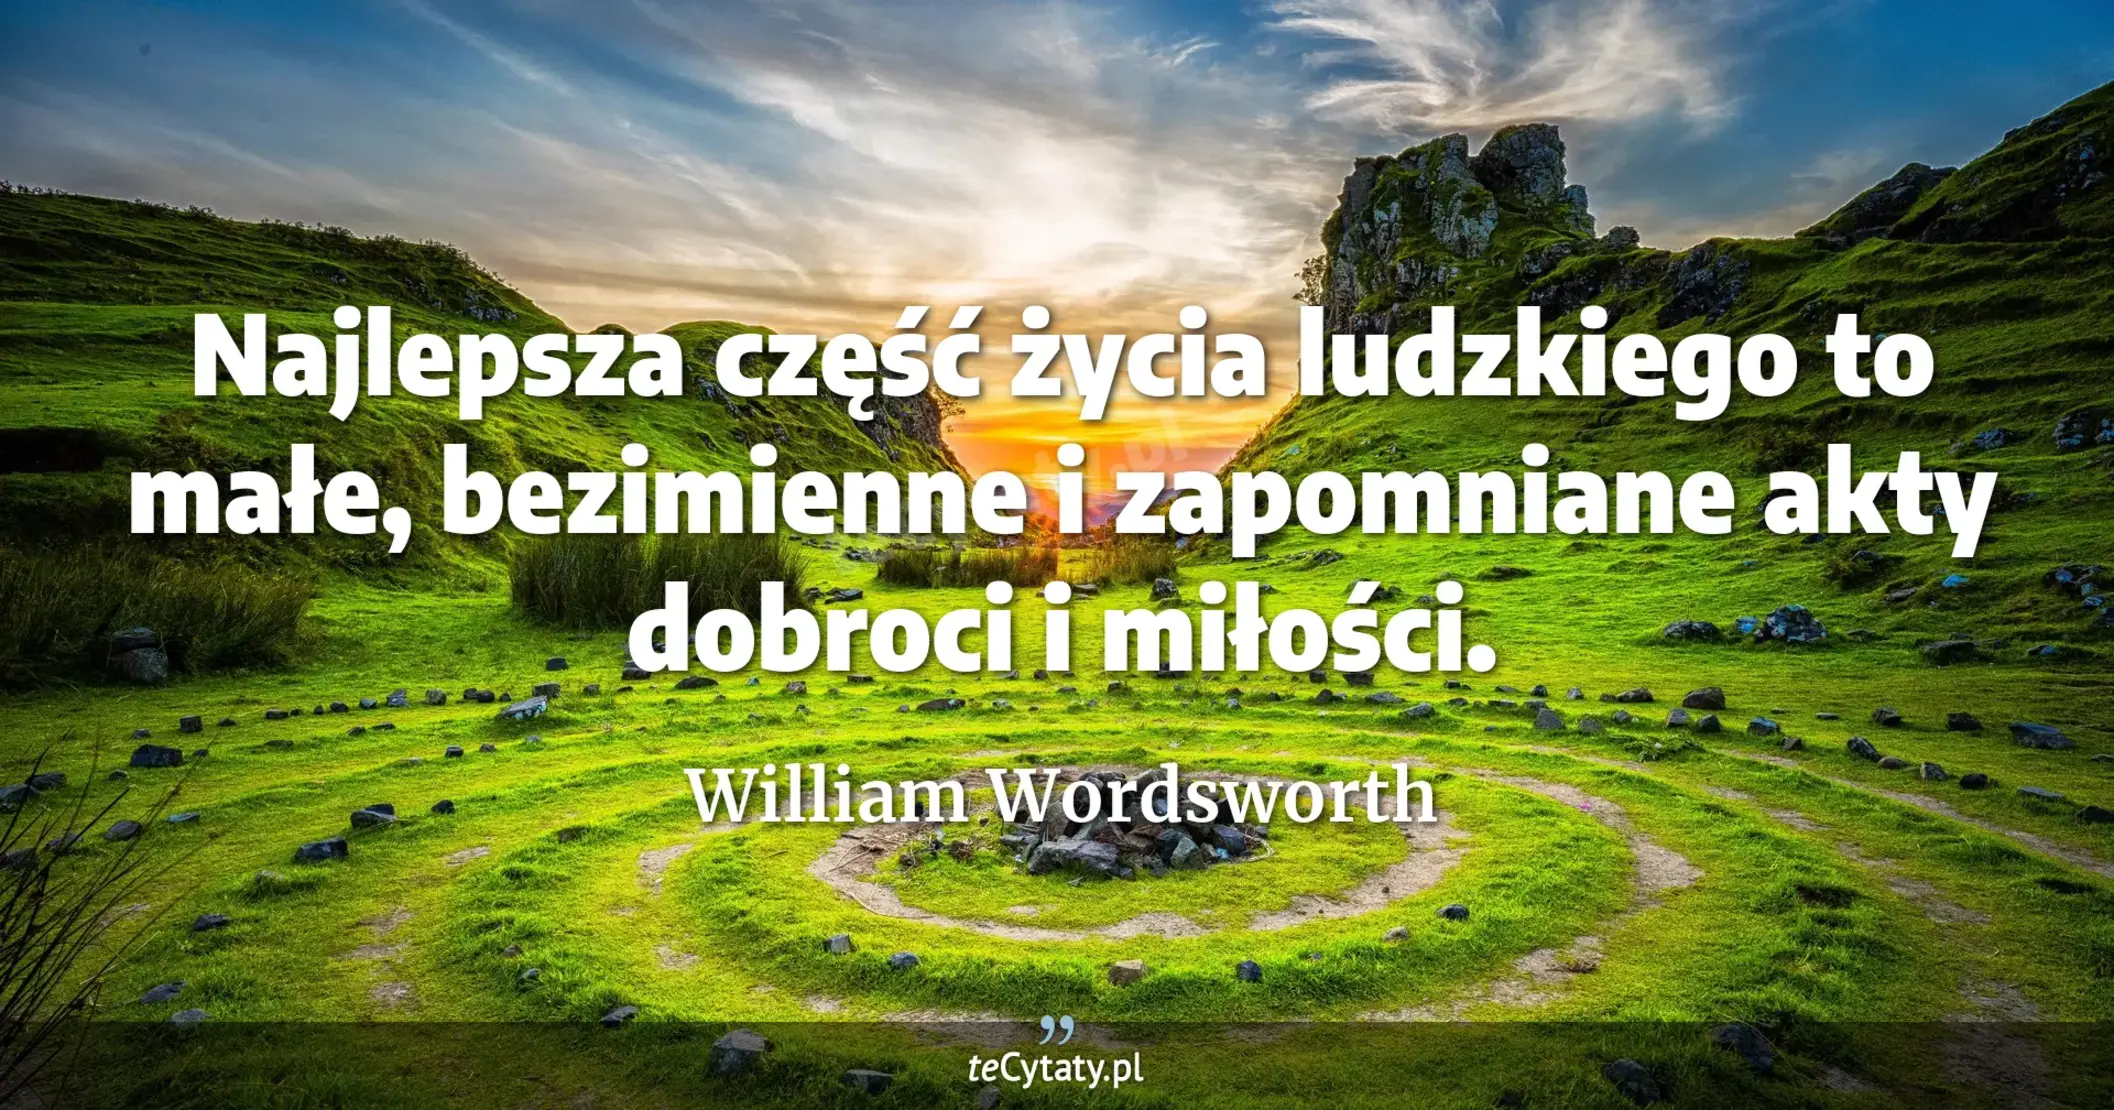 Najlepsza część życia ludzkiego to małe, bezimienne i zapomniane akty dobroci i miłości. - William Wordsworth